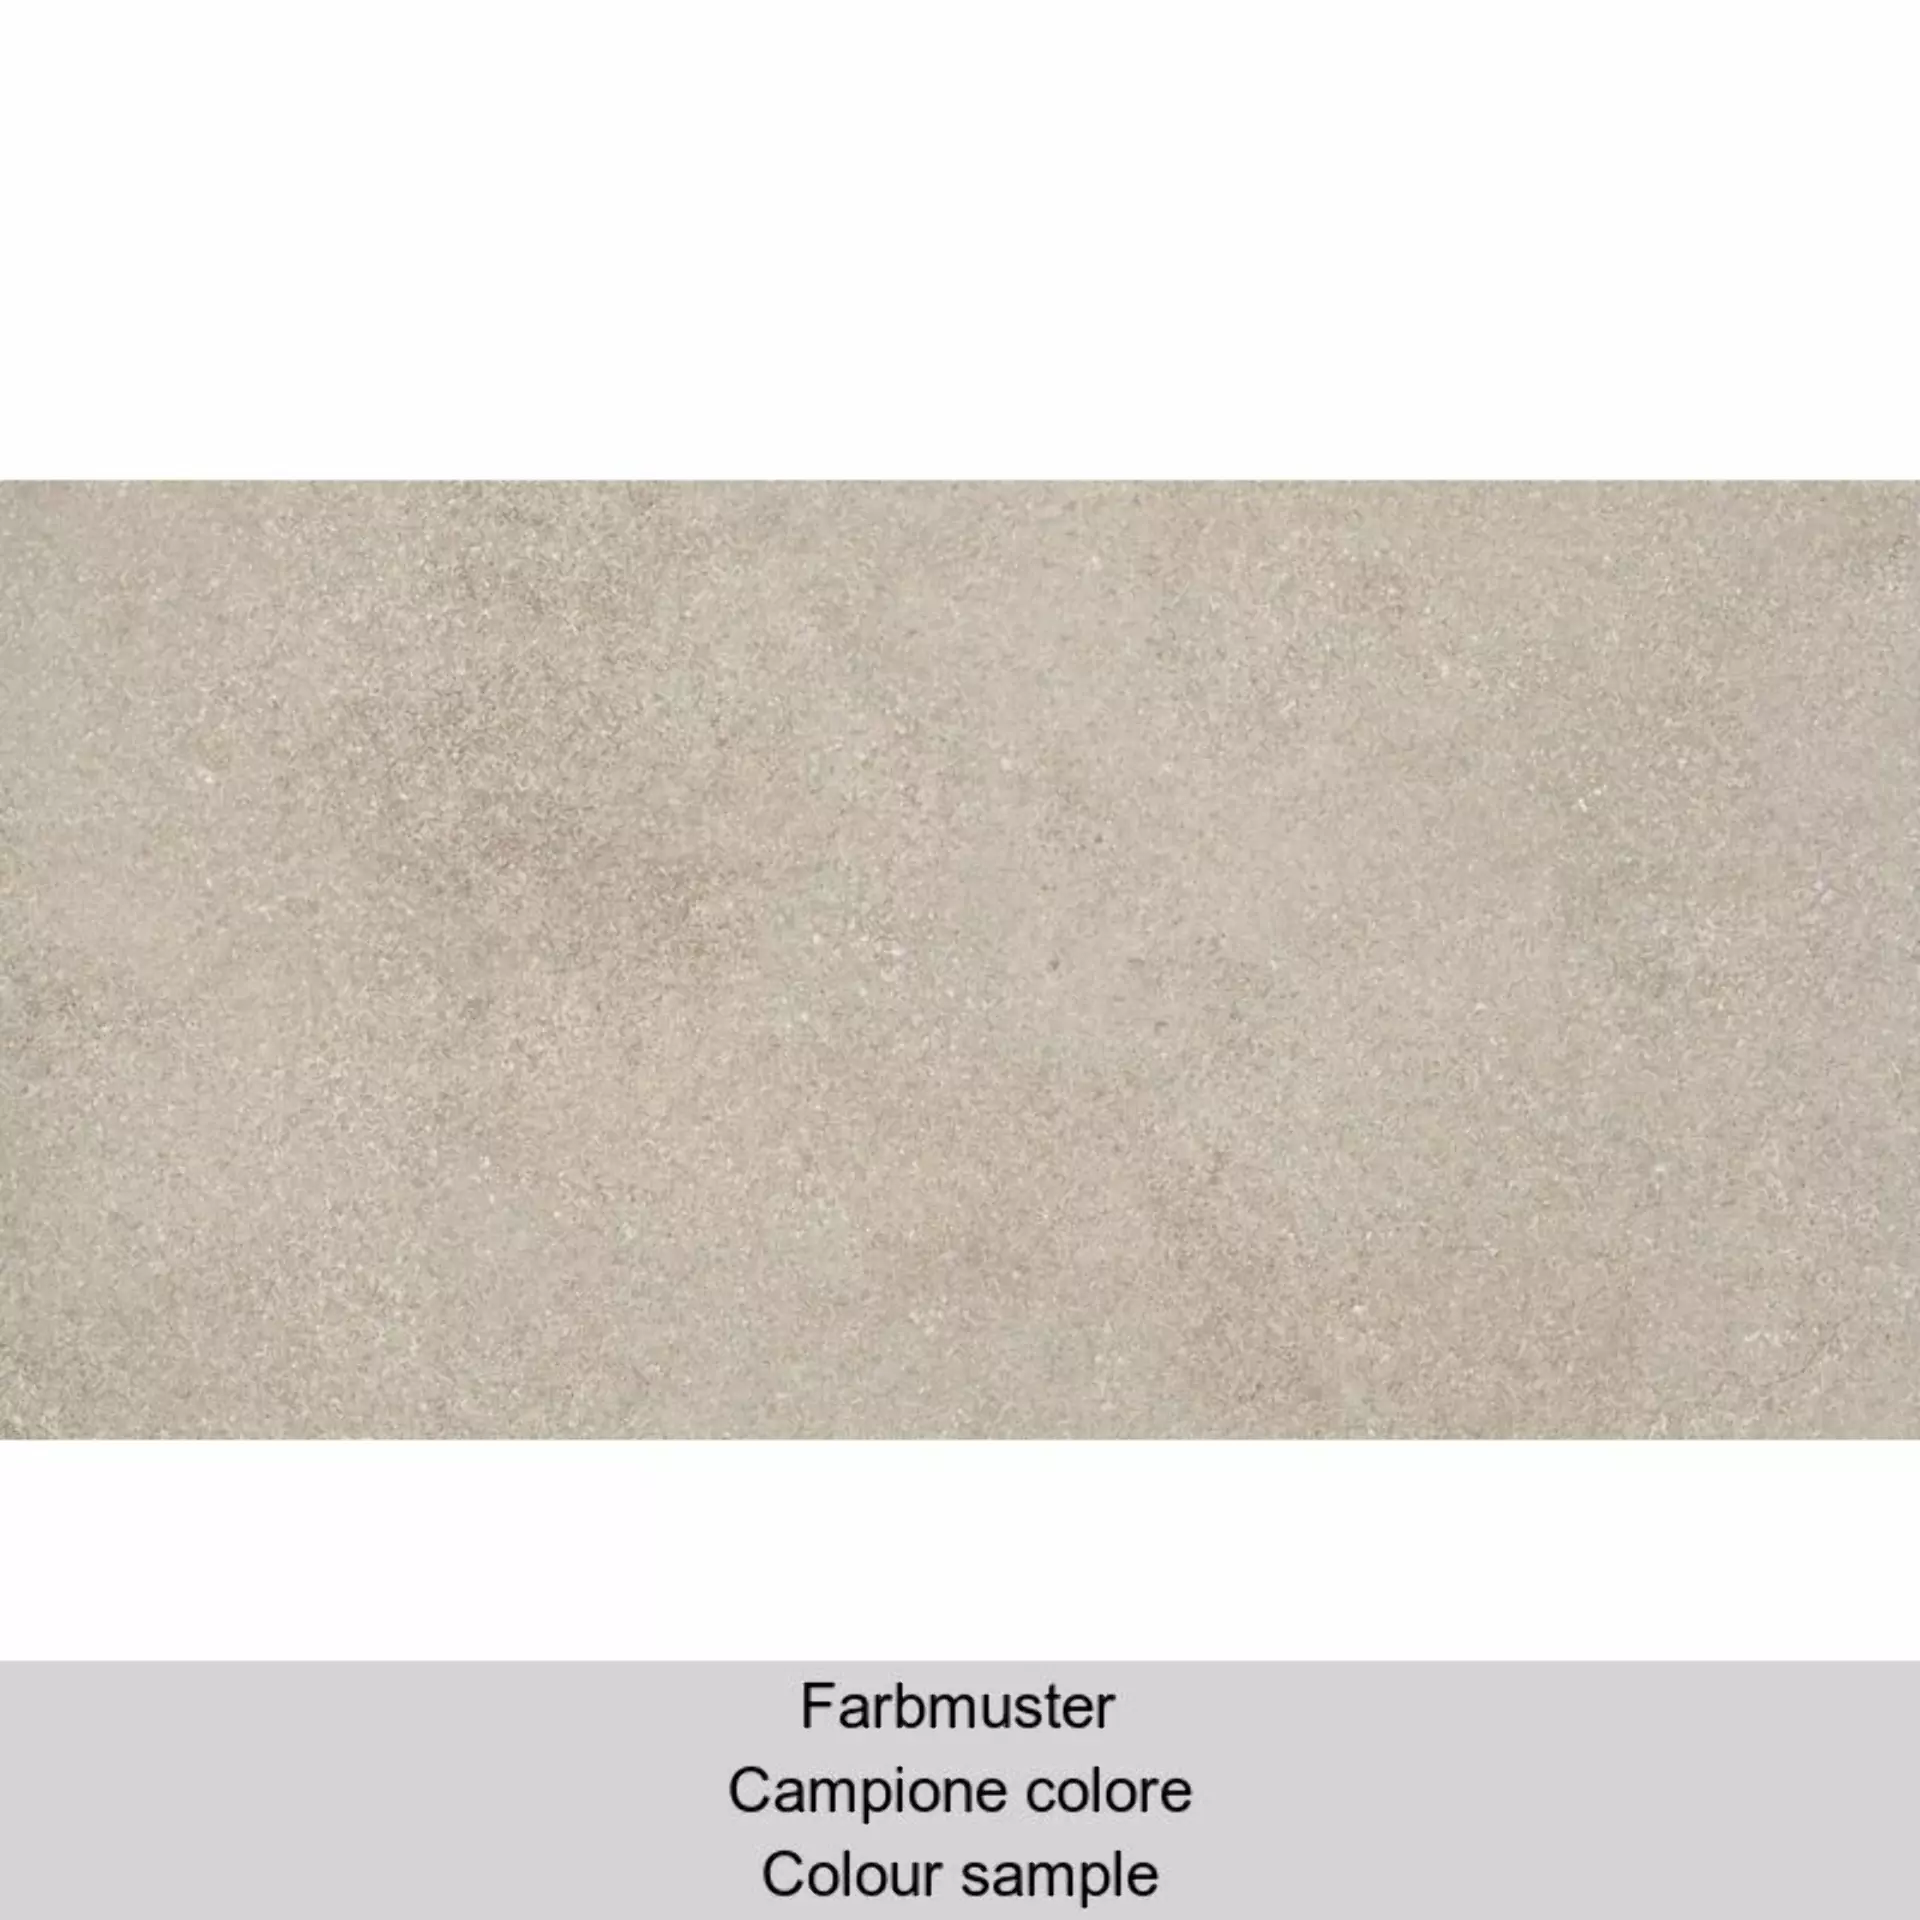 Casalgrande Eco Concrete Beige Grip 10791653 30x60cm rectified 8mm